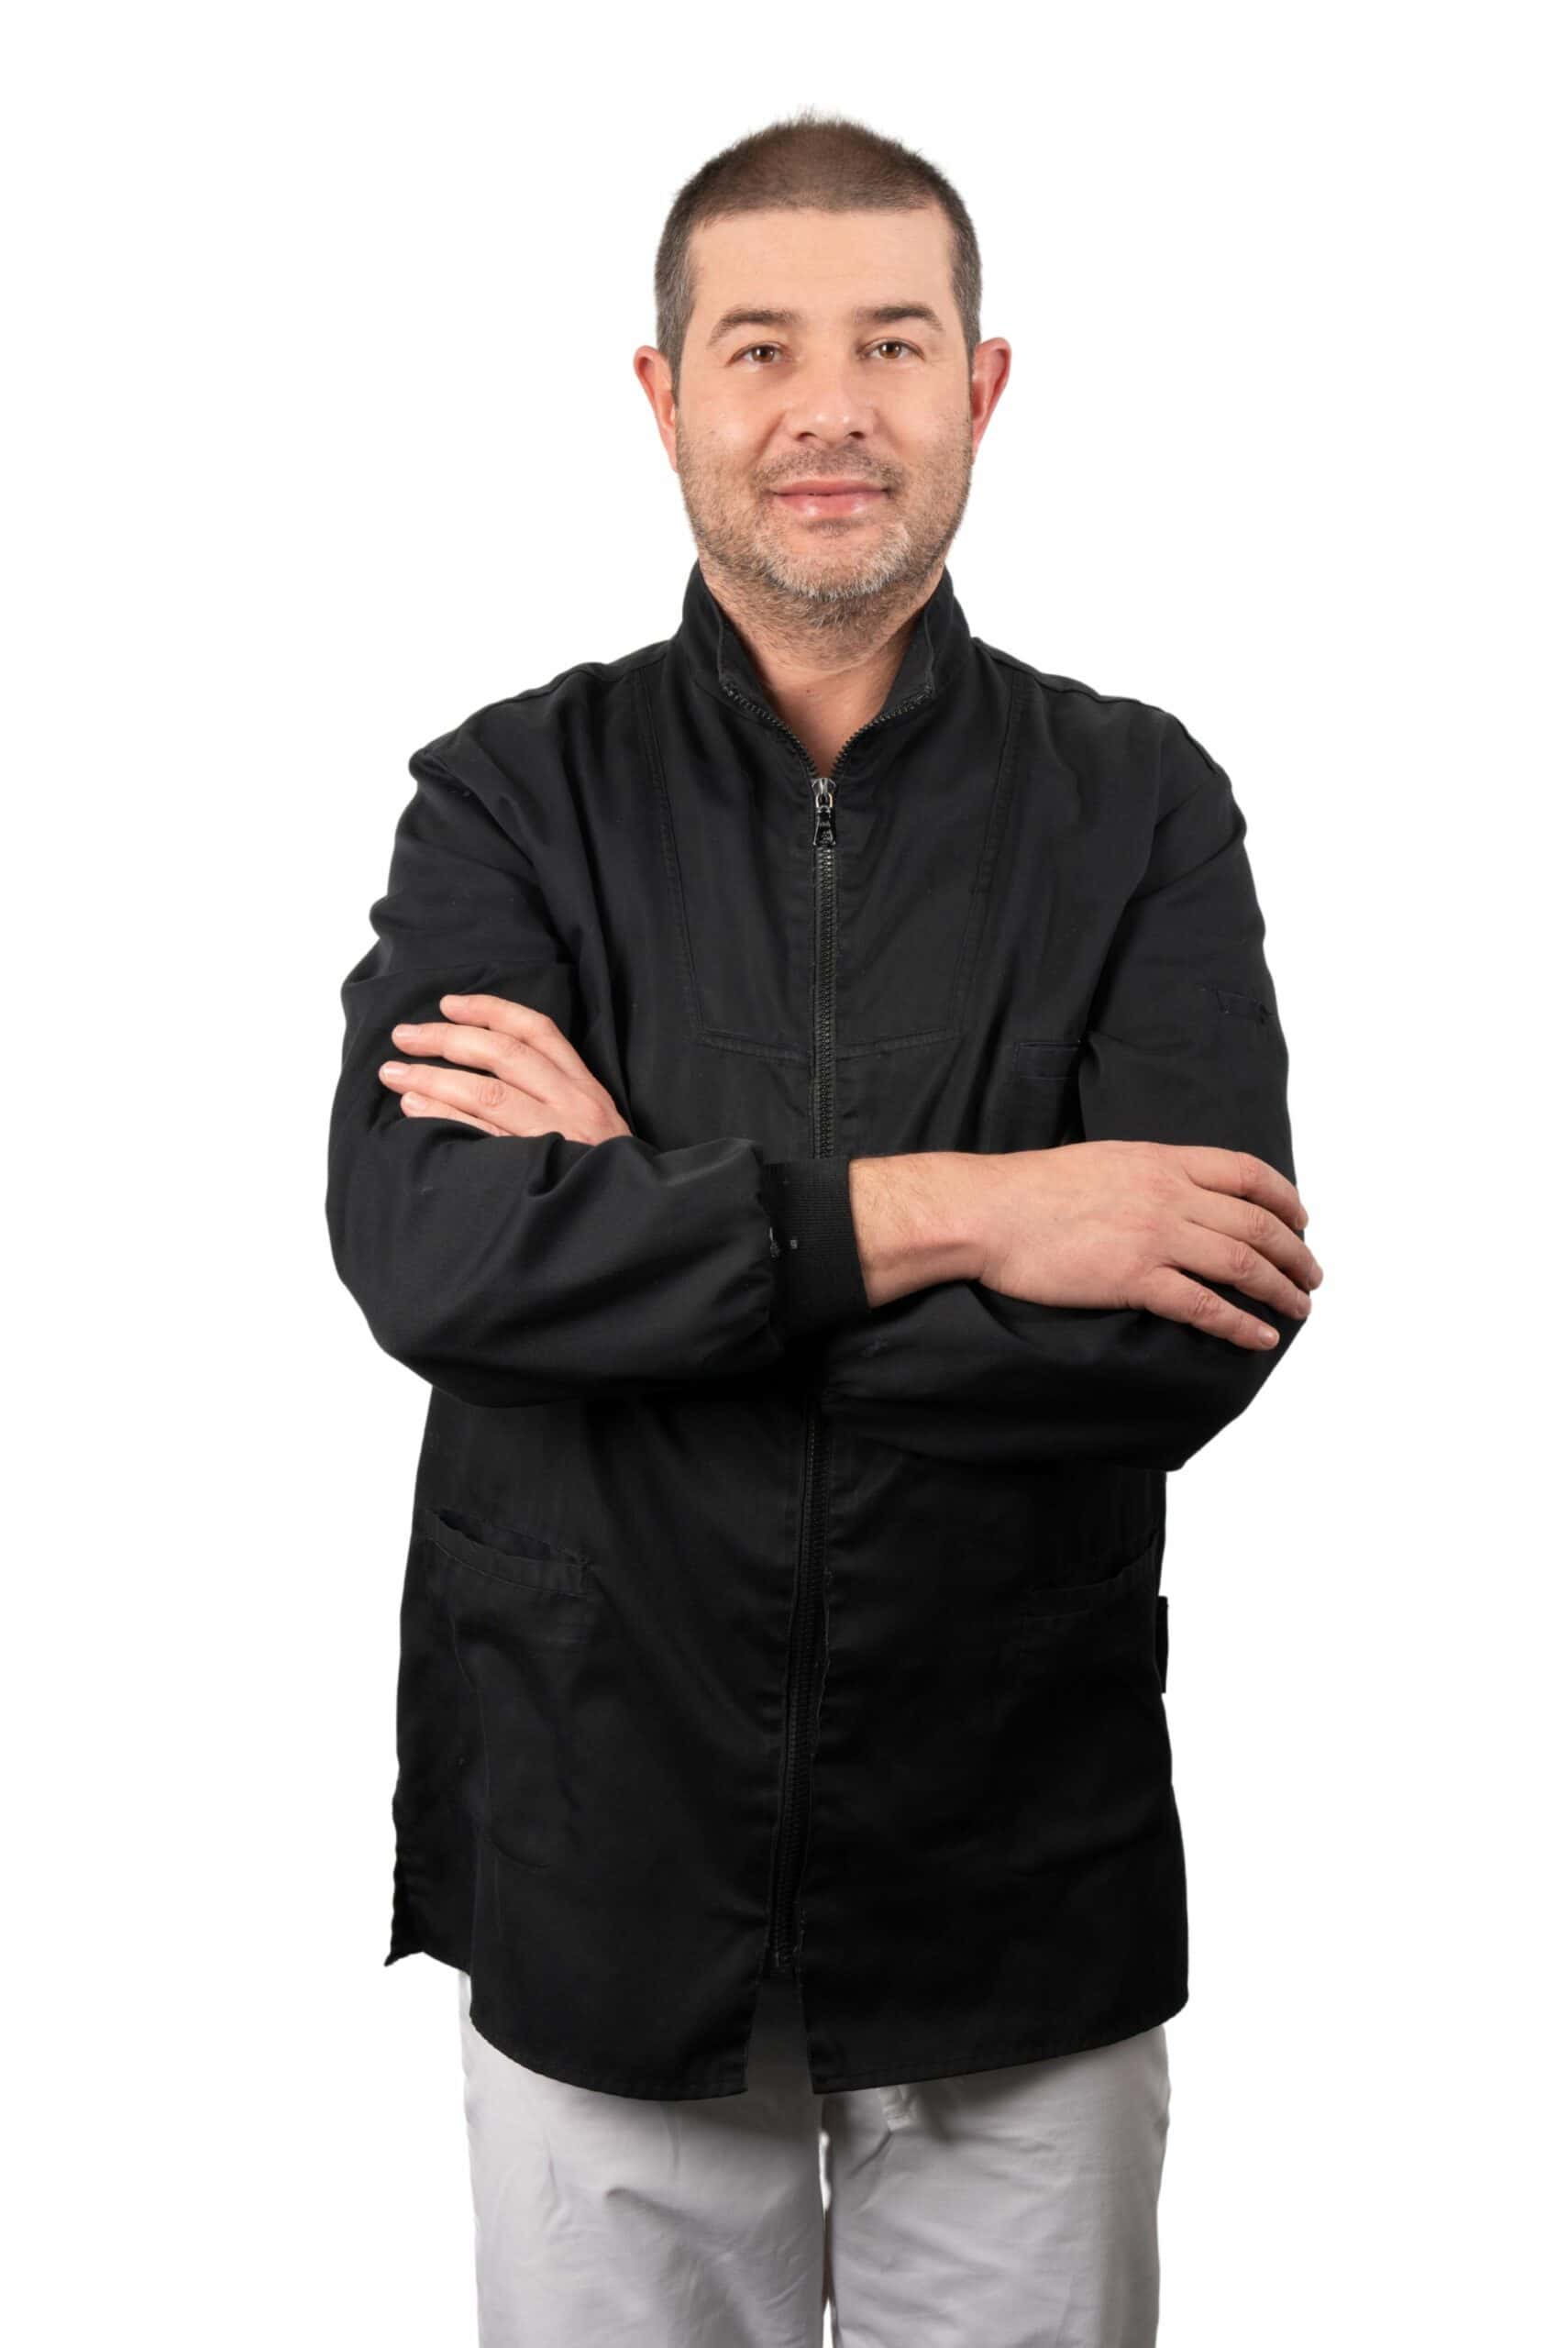 Uomo in giacca nera e pantaloni grigio chiaro in piedi con le braccia incrociate, sorridente alla telecamera, isolata su uno sfondo bianco.